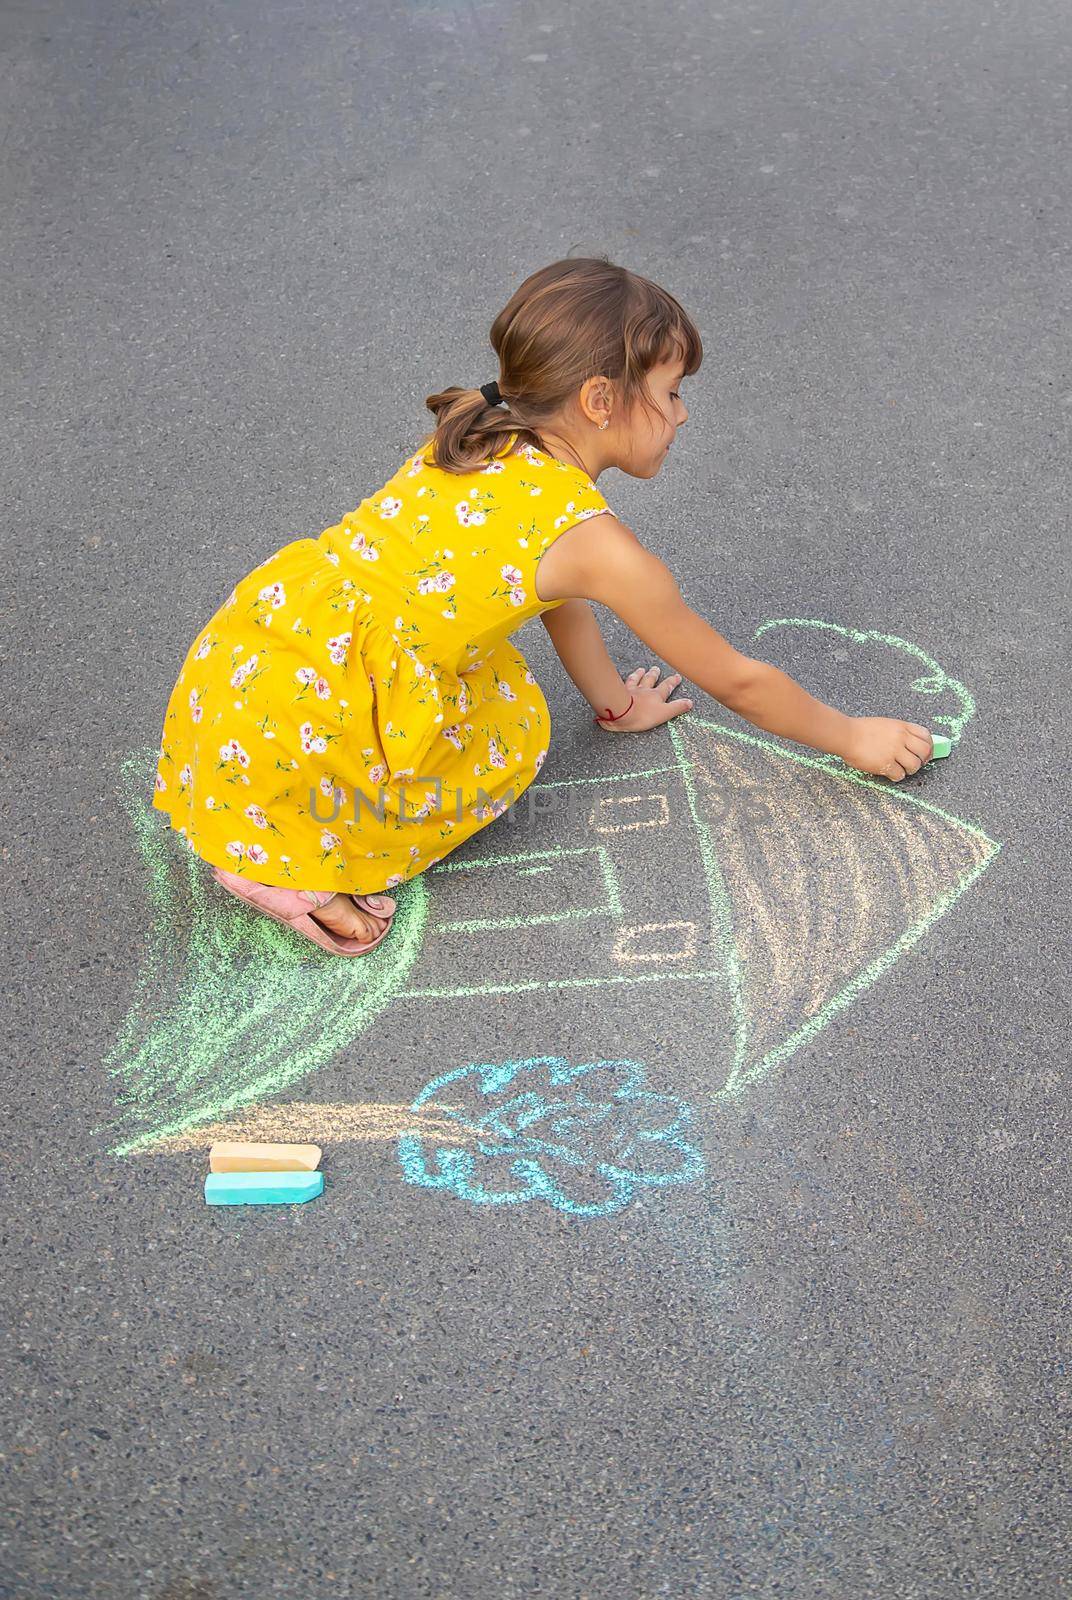 The child draws a house on the asphalt. Selective focus. by yanadjana